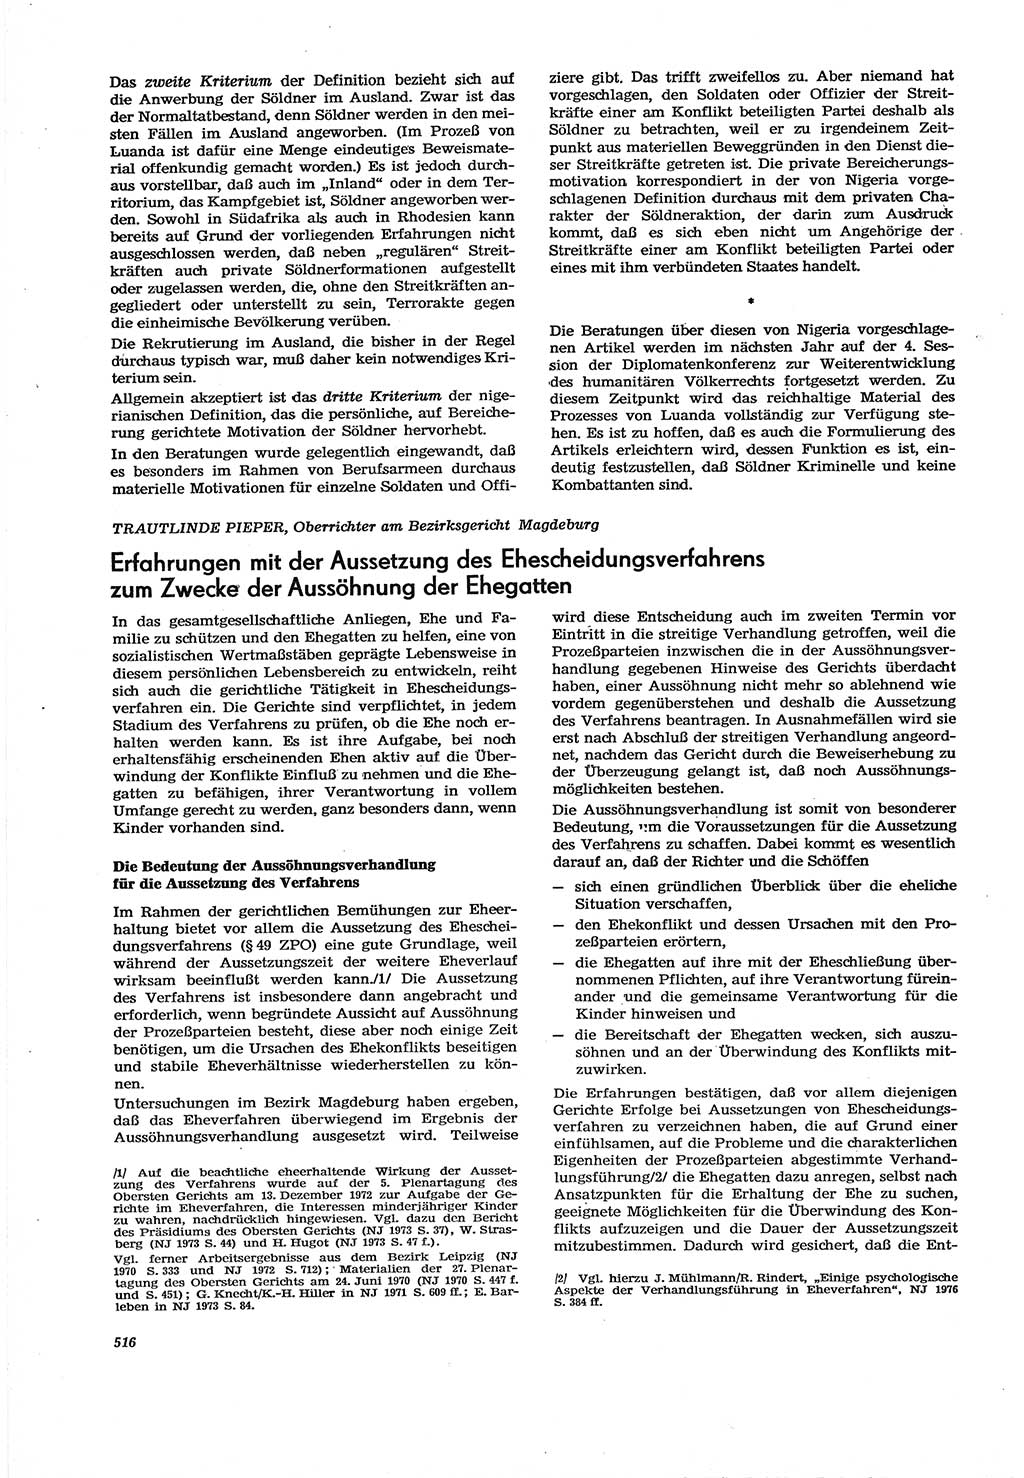 Neue Justiz (NJ), Zeitschrift für Recht und Rechtswissenschaft [Deutsche Demokratische Republik (DDR)], 30. Jahrgang 1976, Seite 516 (NJ DDR 1976, S. 516)